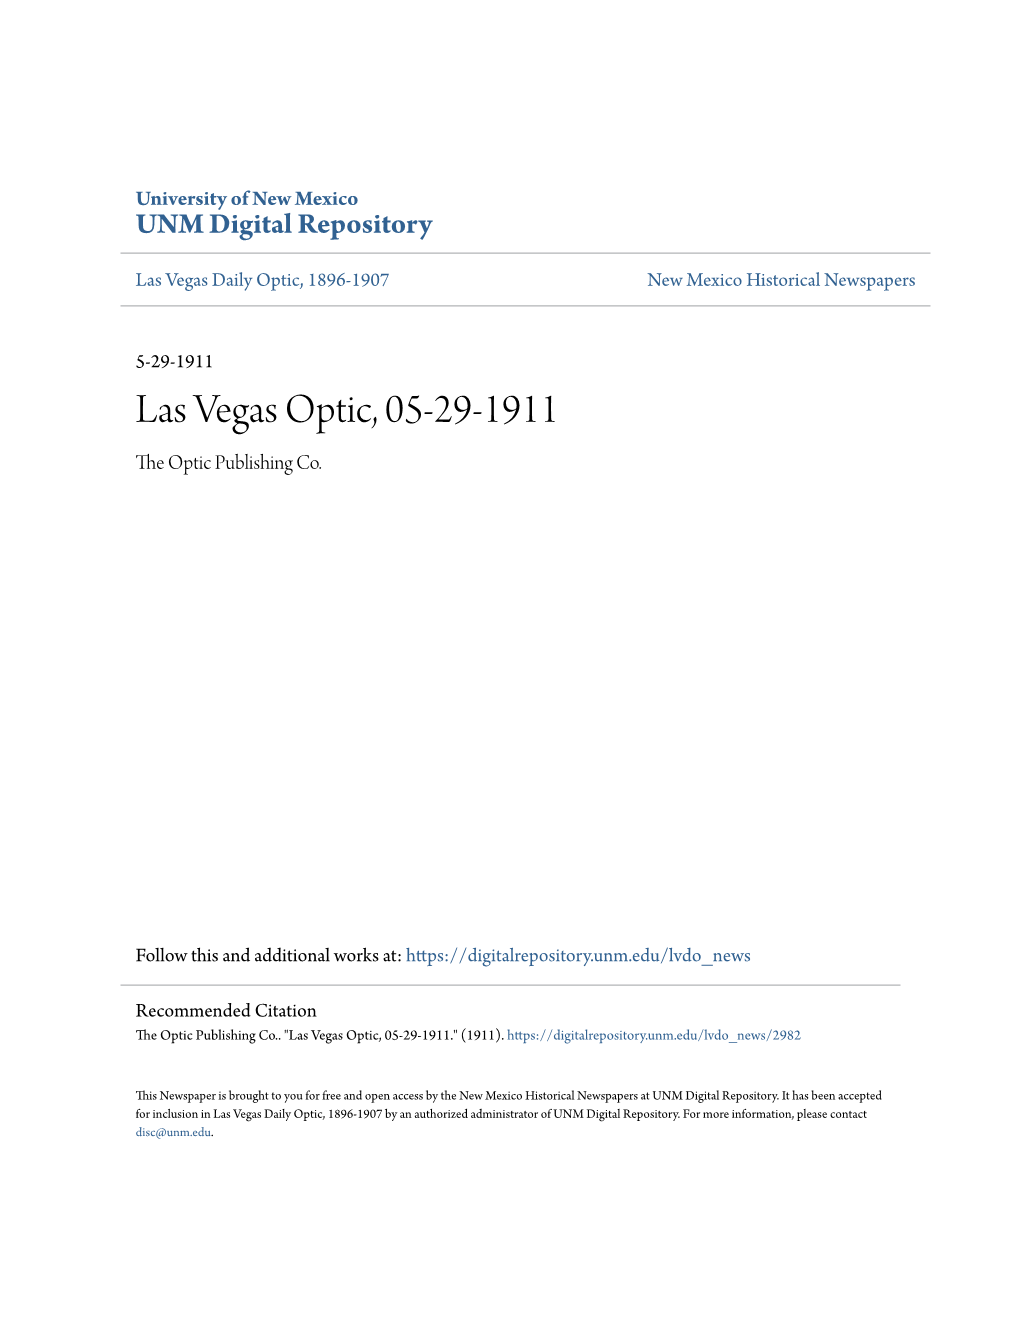 Las Vegas Optic, 05-29-1911 the Optic Publishing Co